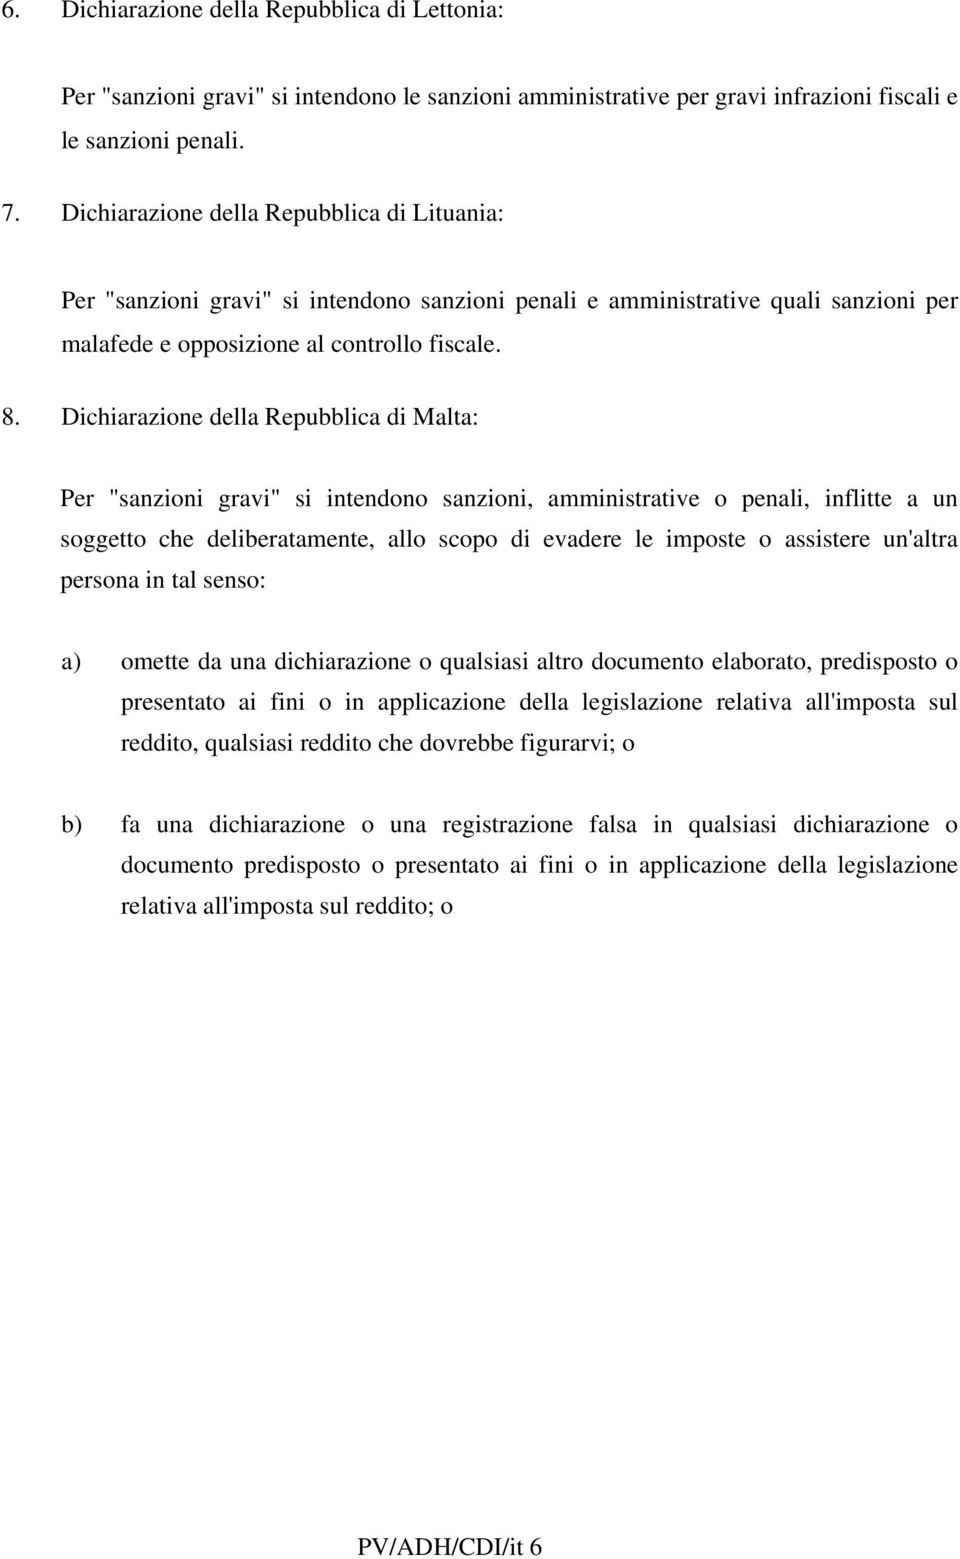 Dichiarazione della Repubblica di Malta: Per "sanzioni gravi" si intendono sanzioni, amministrative o penali, inflitte a un soggetto che deliberatamente, allo scopo di evadere le imposte o assistere